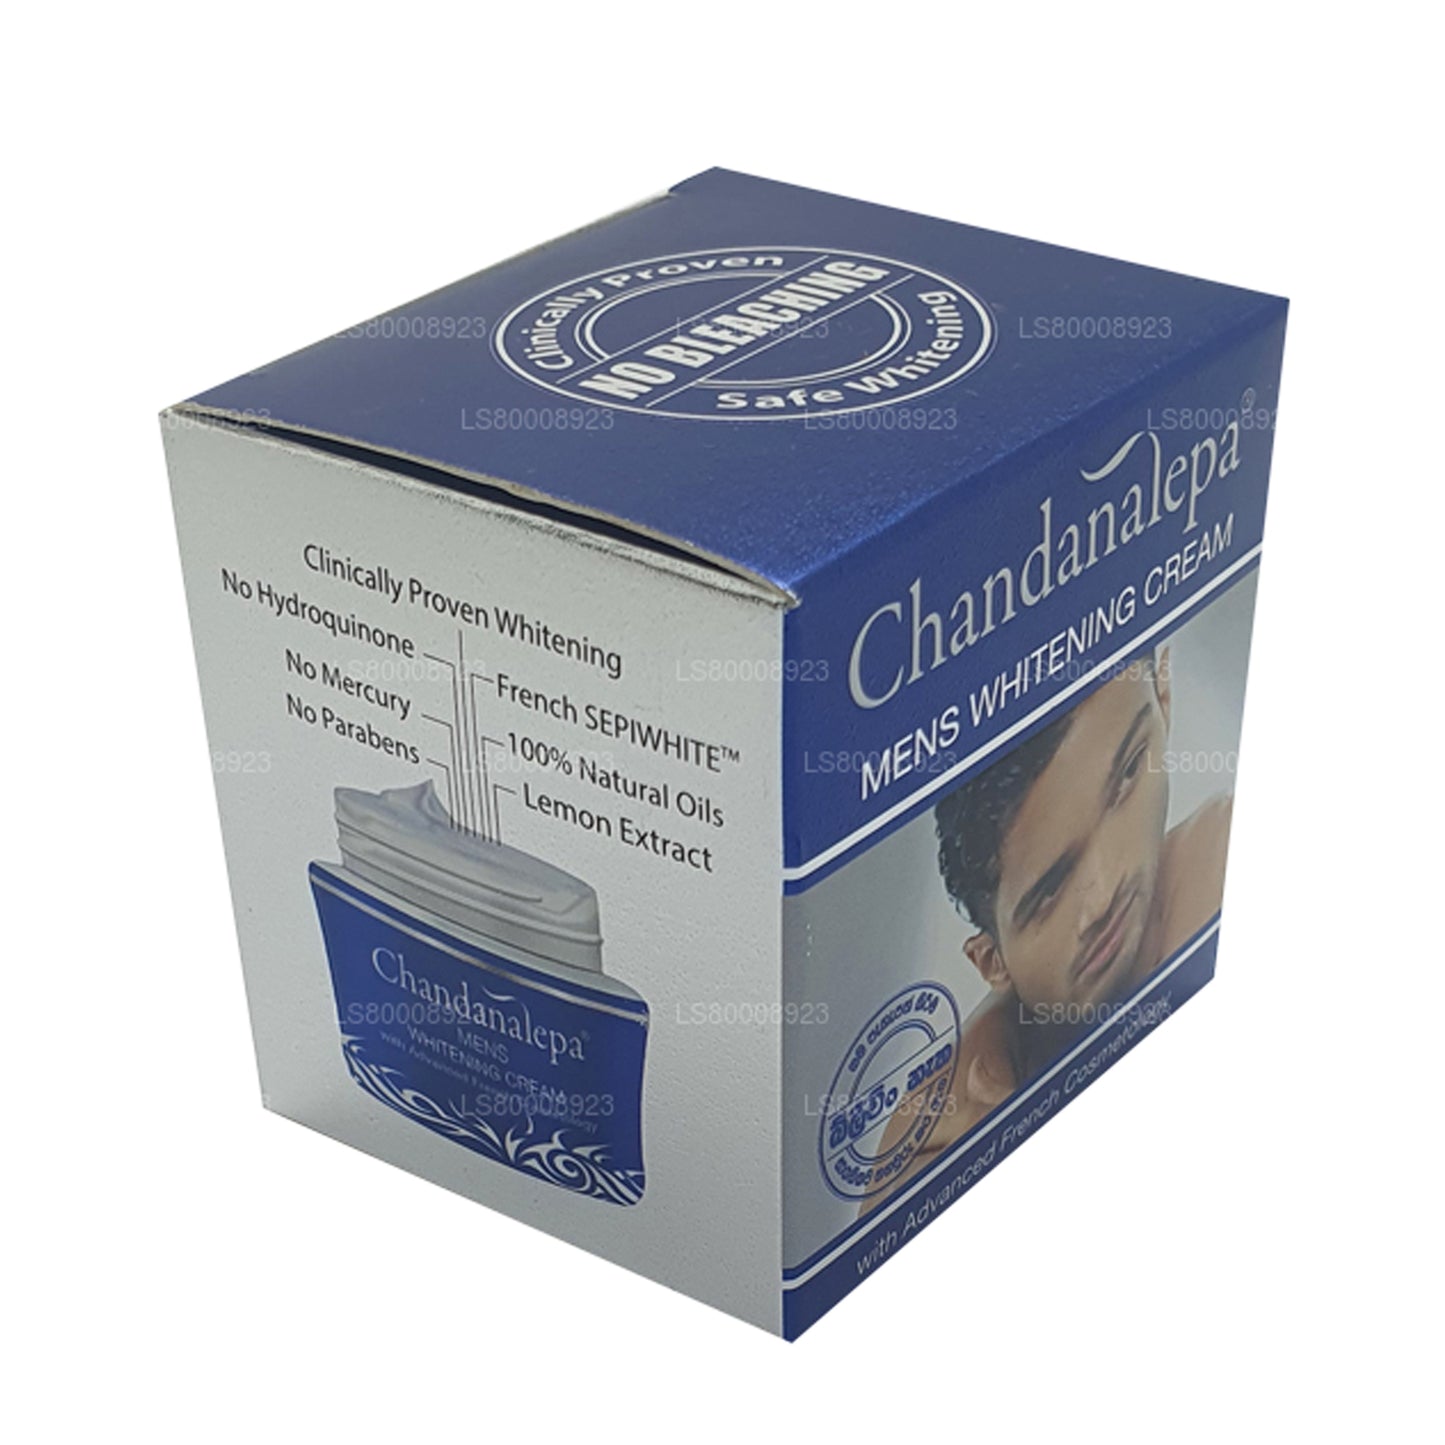 Crema blanqueadora para hombre Chandanalepa (20 g)